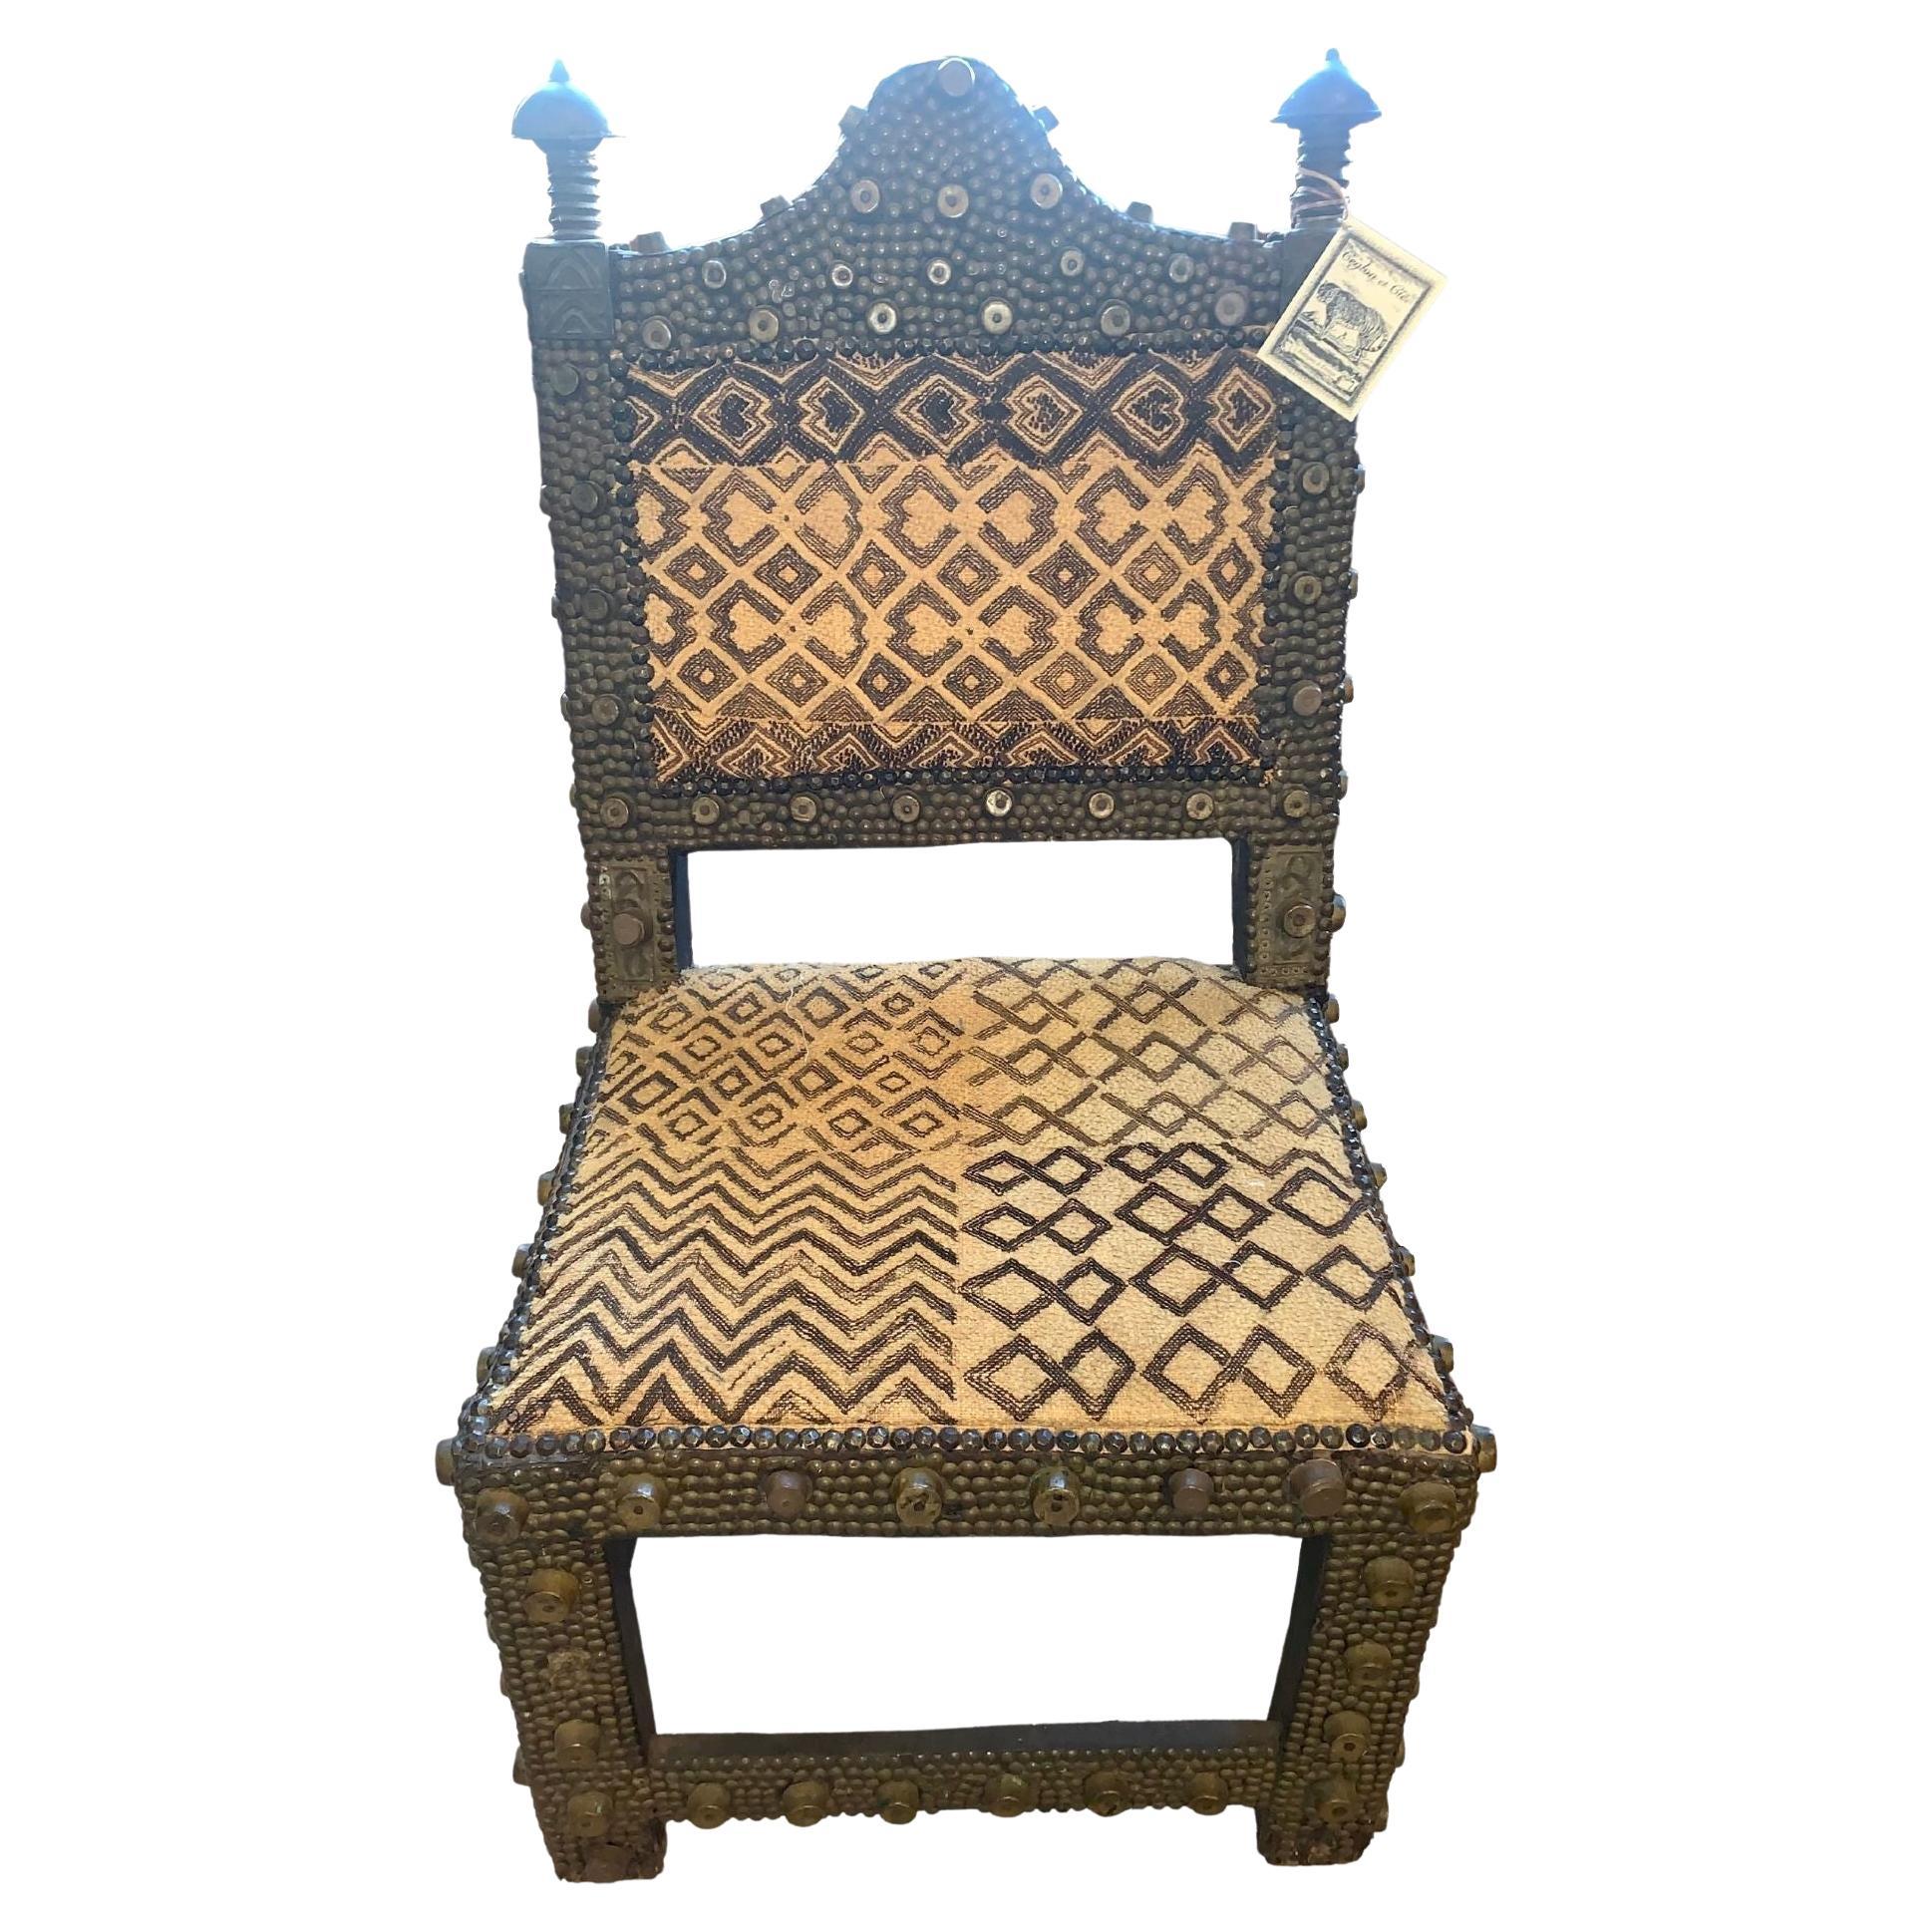 chaise du roi Ashanti des années 1860
Ferronnerie avec rails et goujons de métier 
Épis de faîtage en bronze
Tissu Kuba.